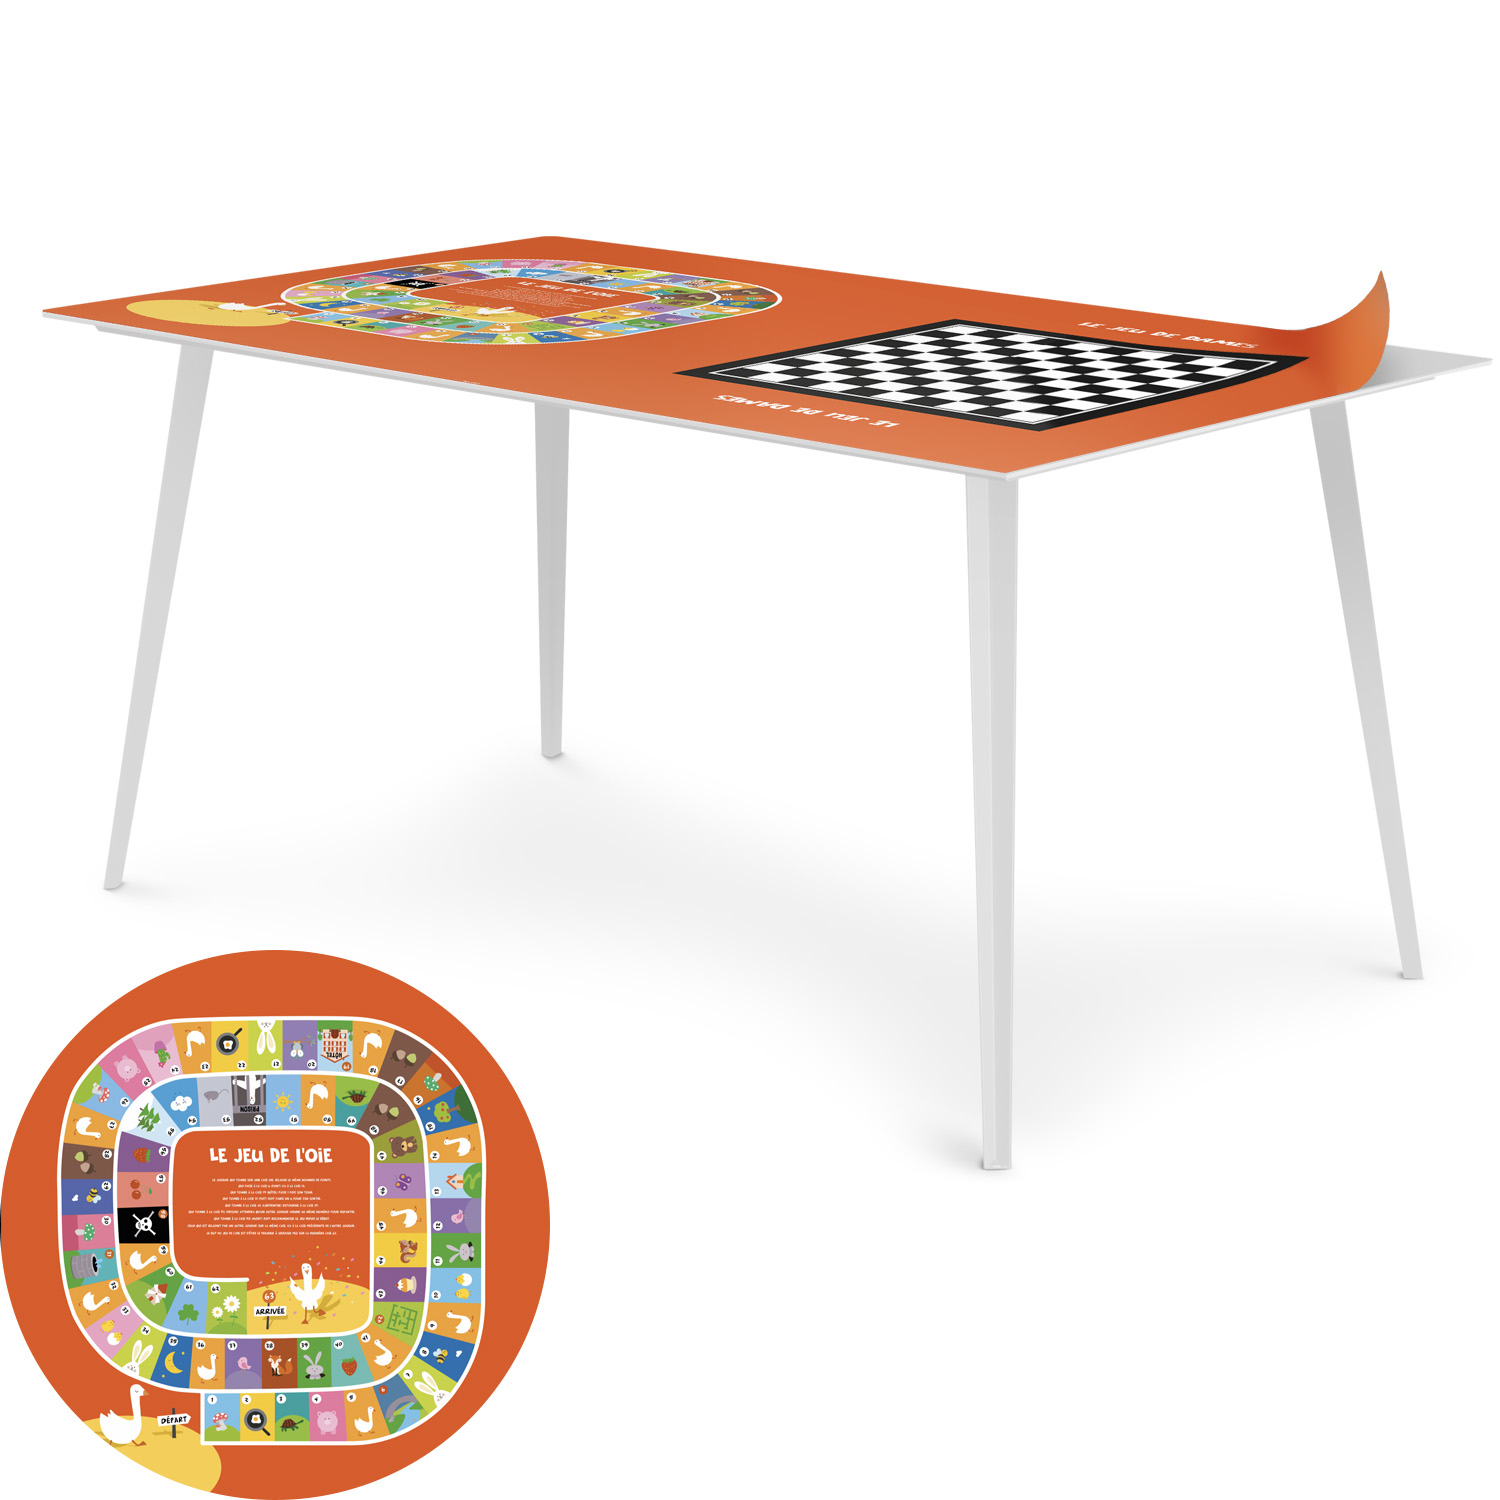 Blickfang Rechteckiger Magnet Tisch 150x90cm aus Metall mit einem Tischset mit Spielfeld